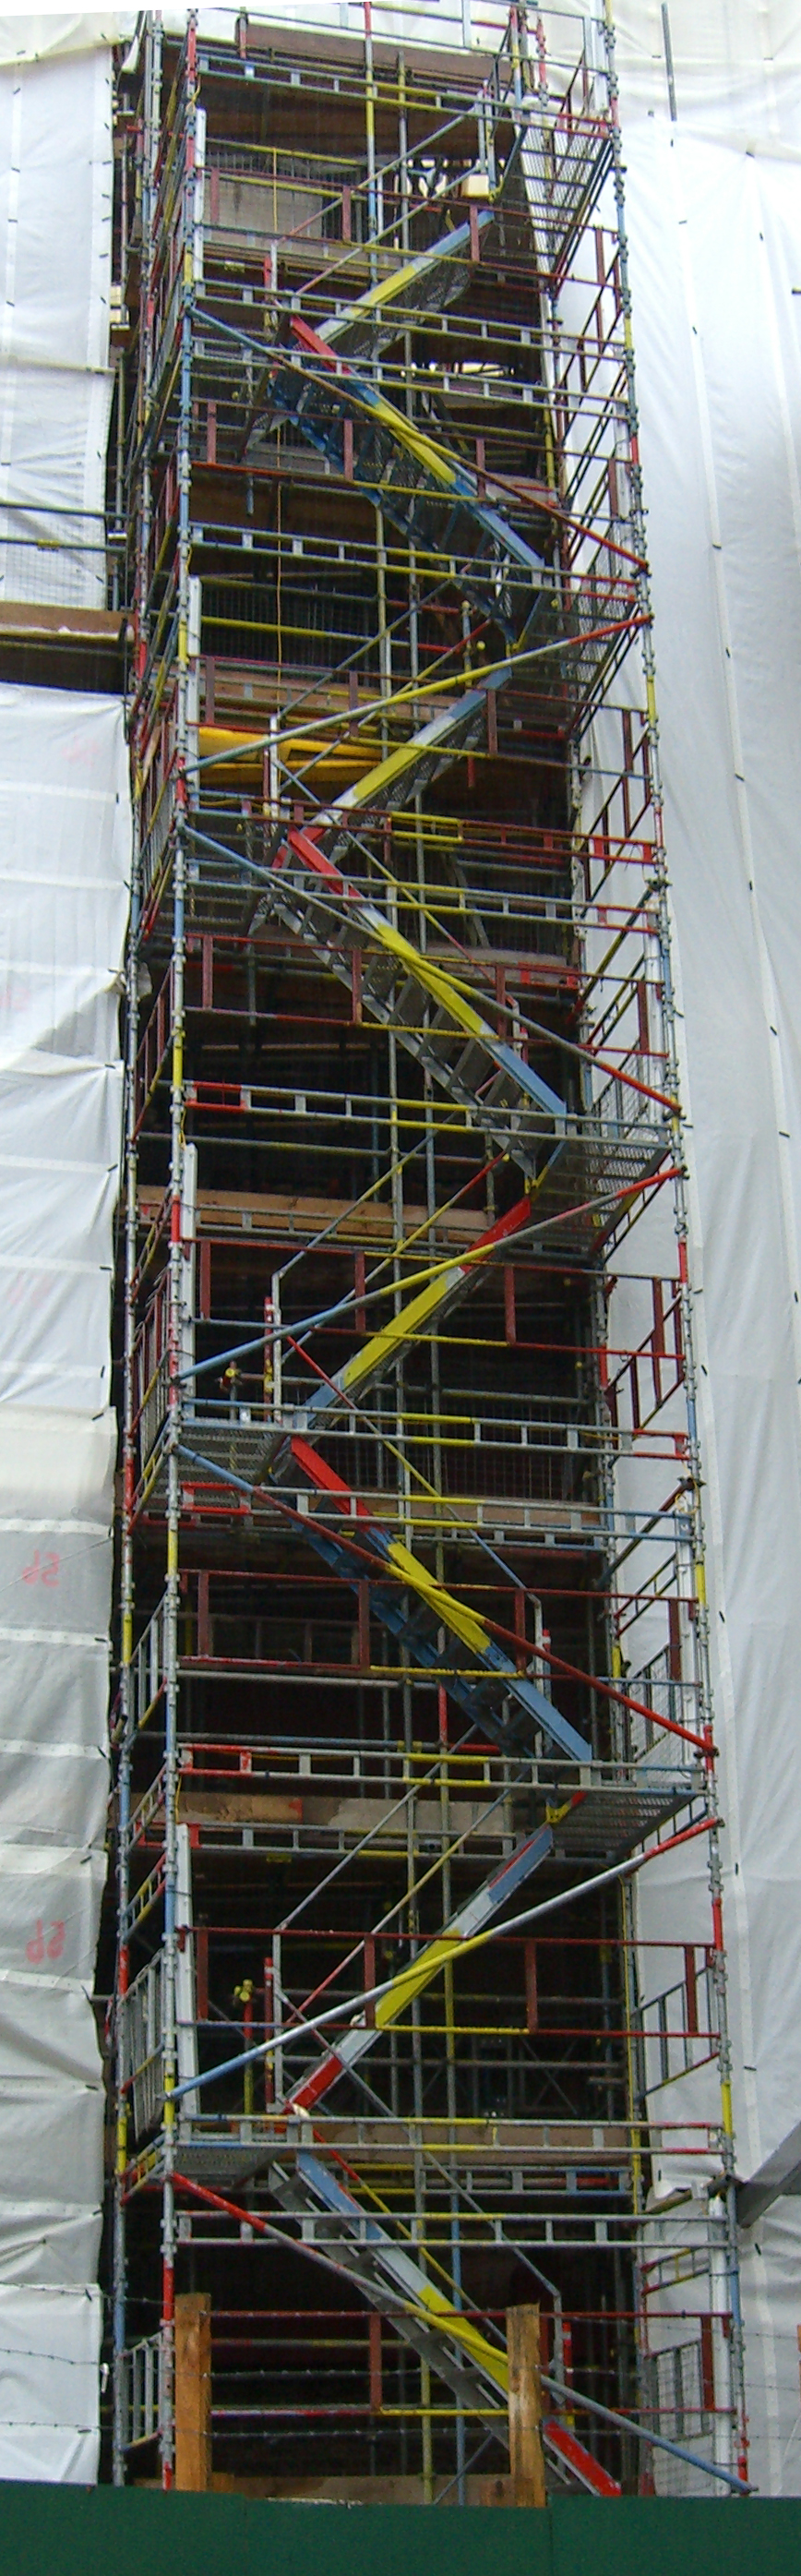 ladders0224 cropped.jpg